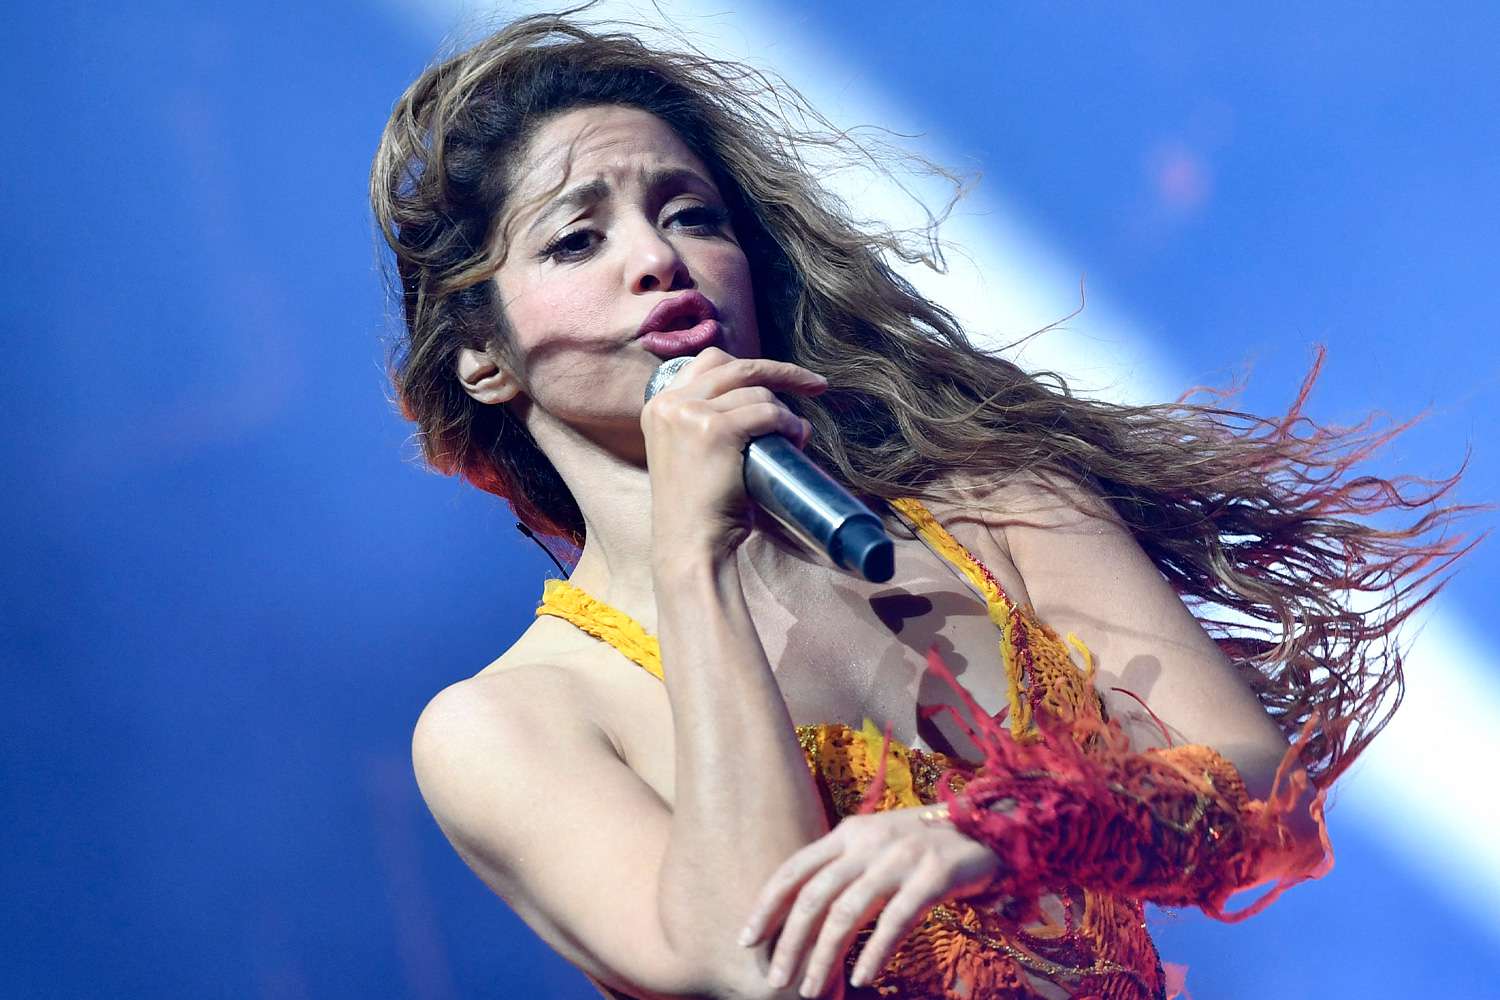 Shakira anuncia su nueva gira en Coachella durante su aparición sorpresa con Bizarrap